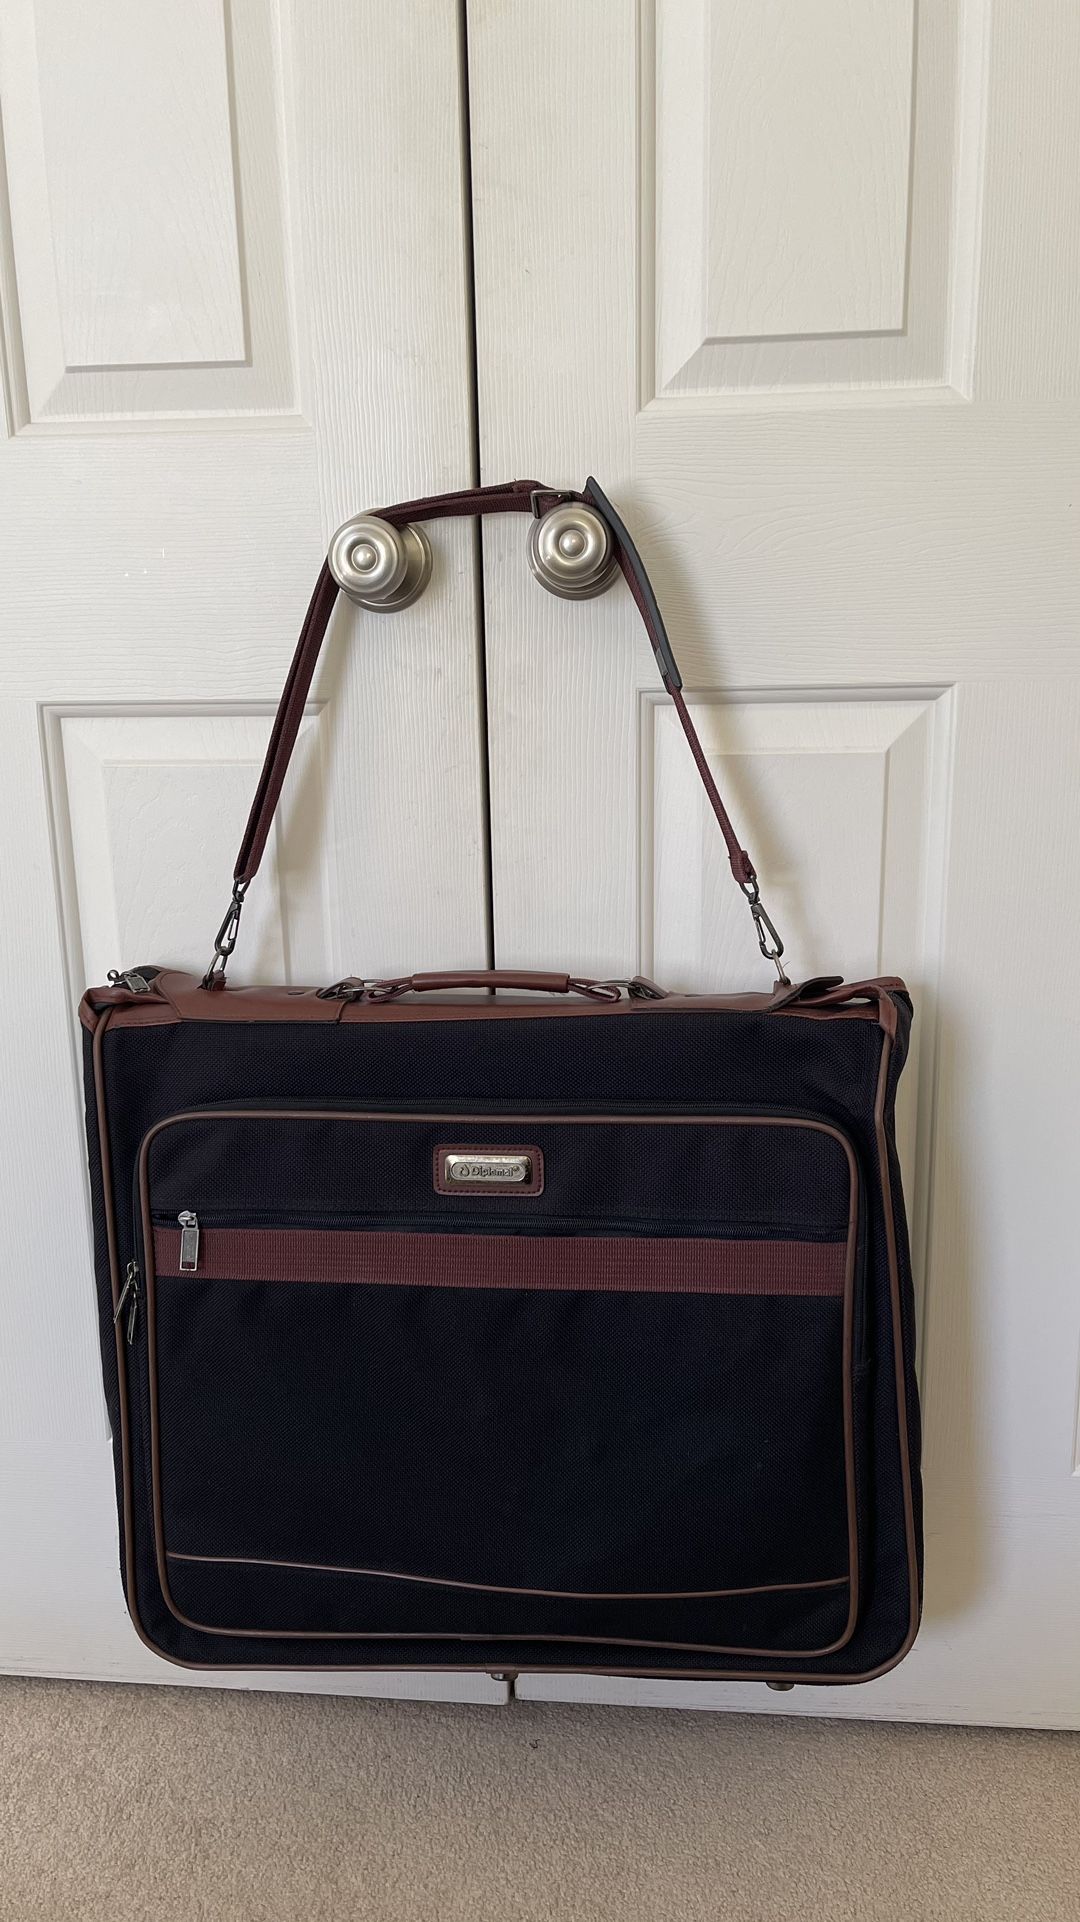 Garment Bag / Carry On Bag